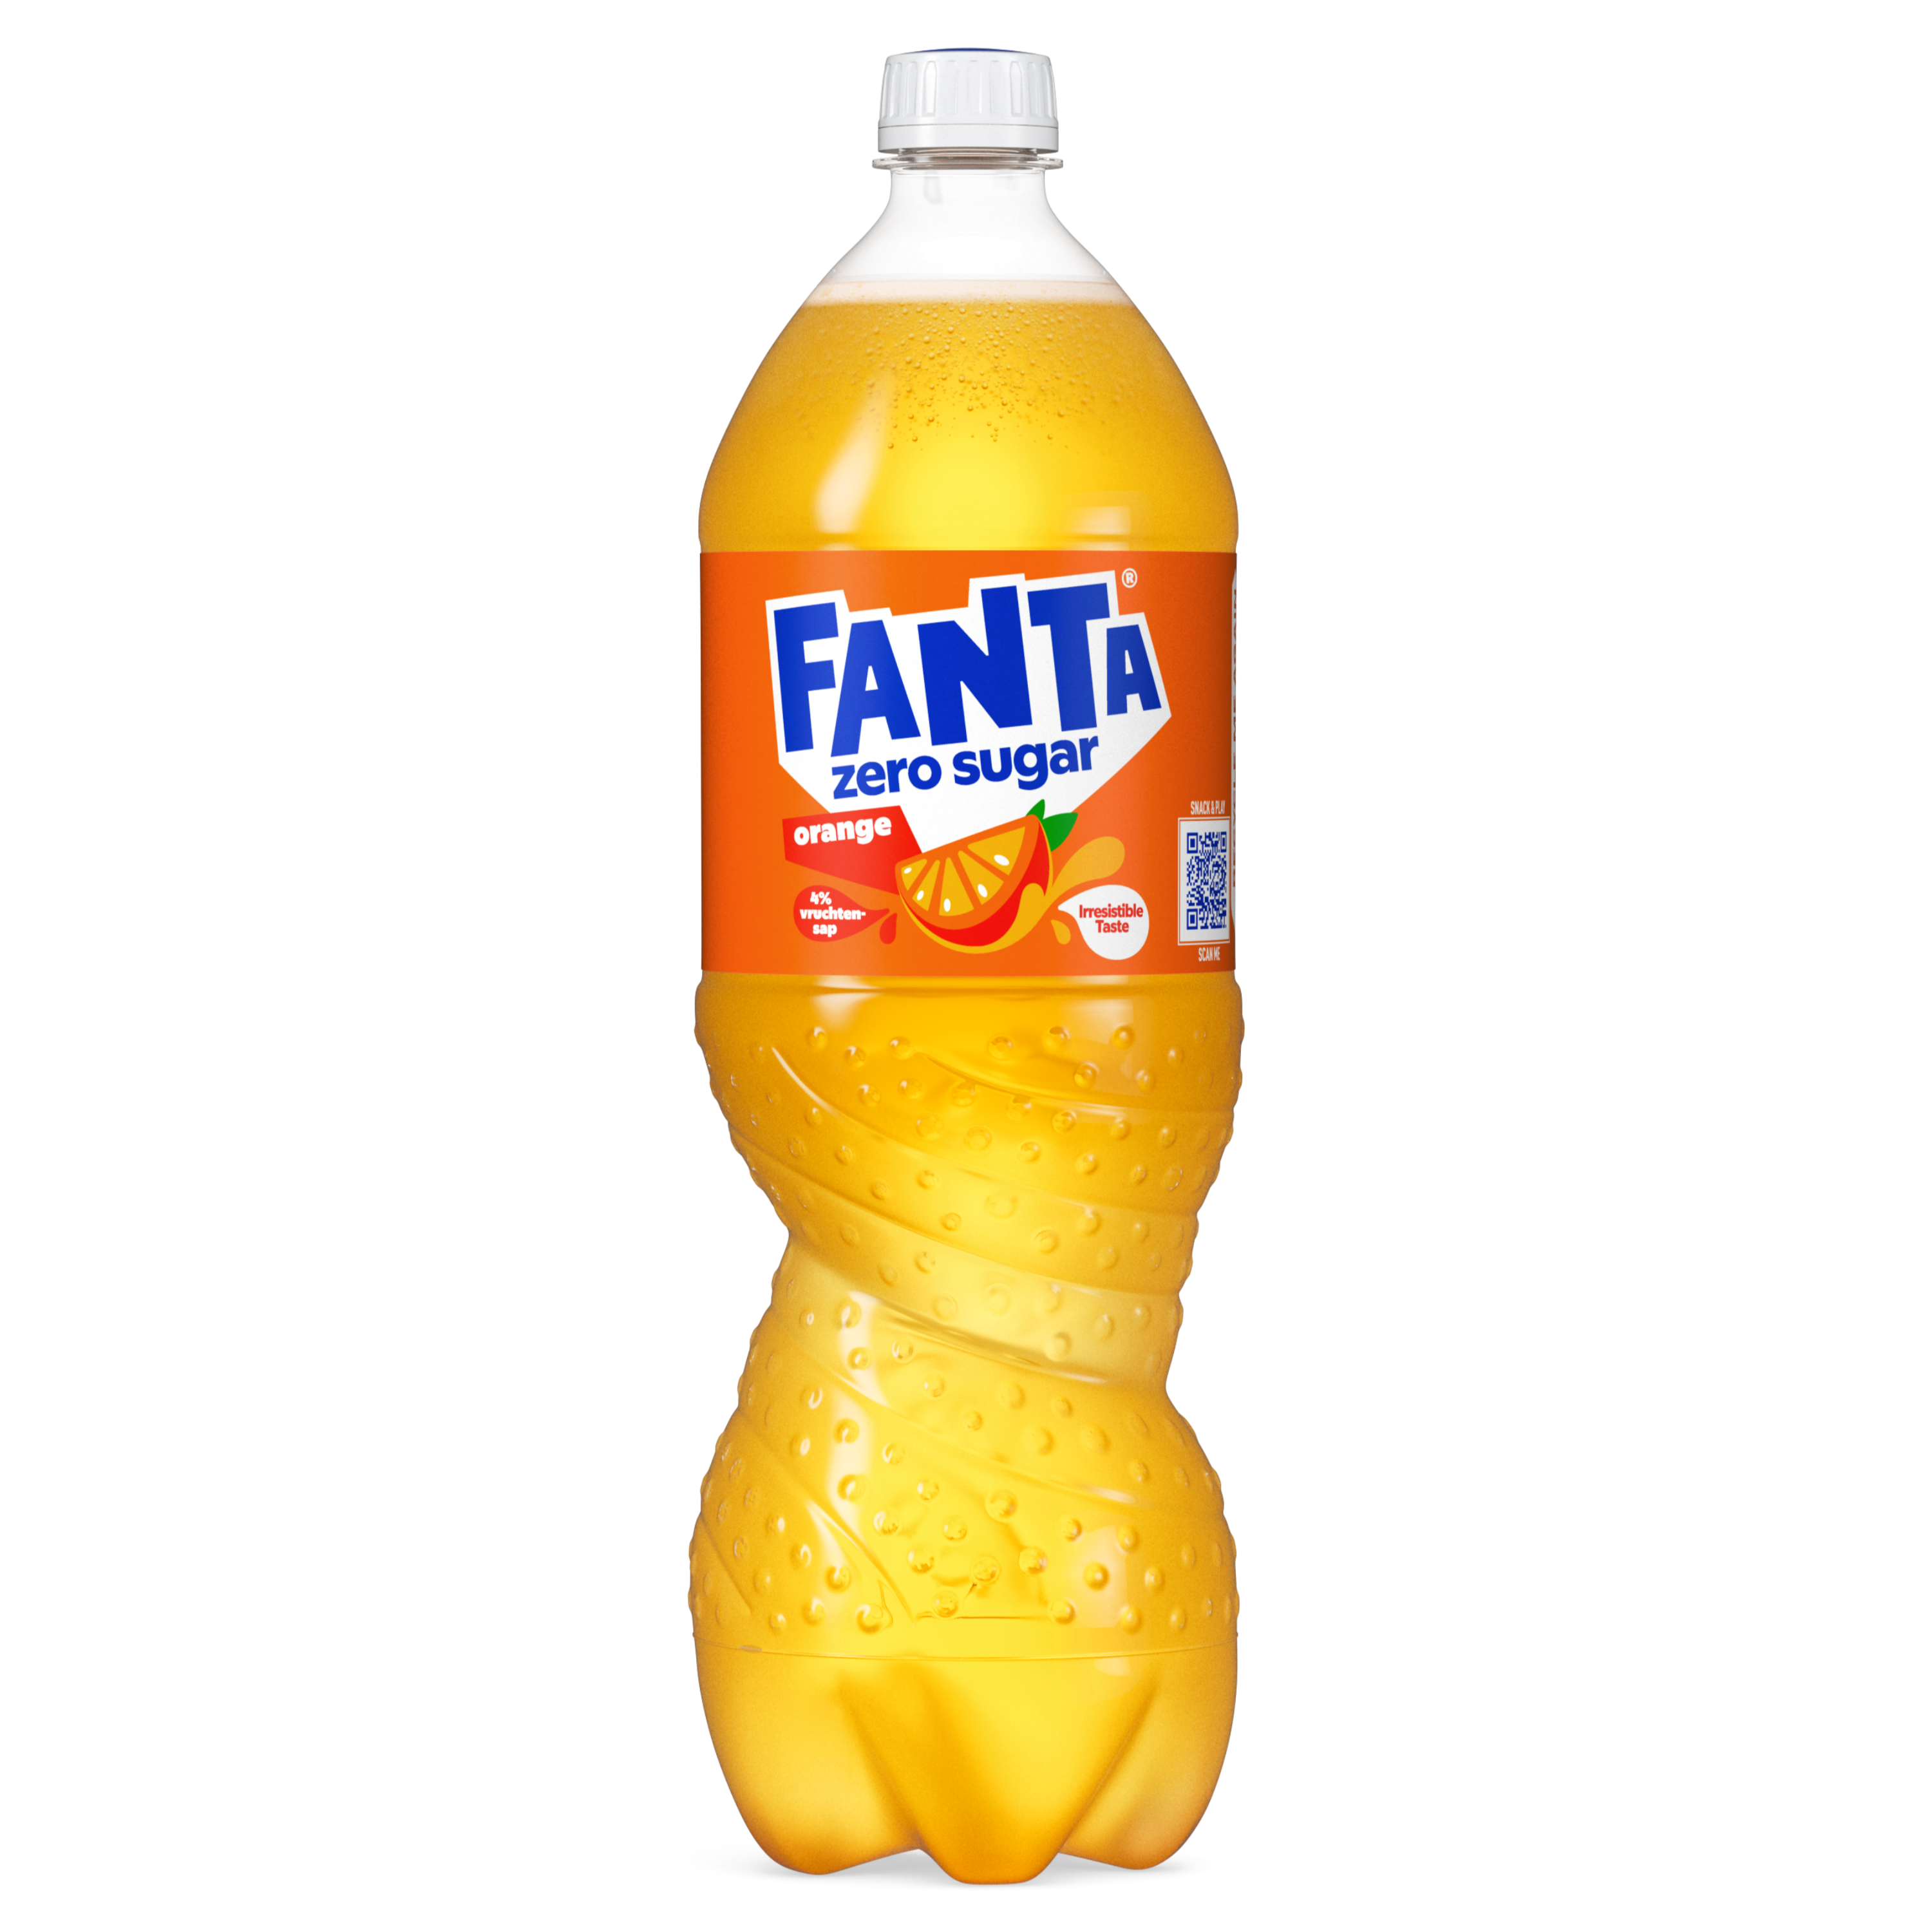 Een fles Fanta orange zero sugar-drank